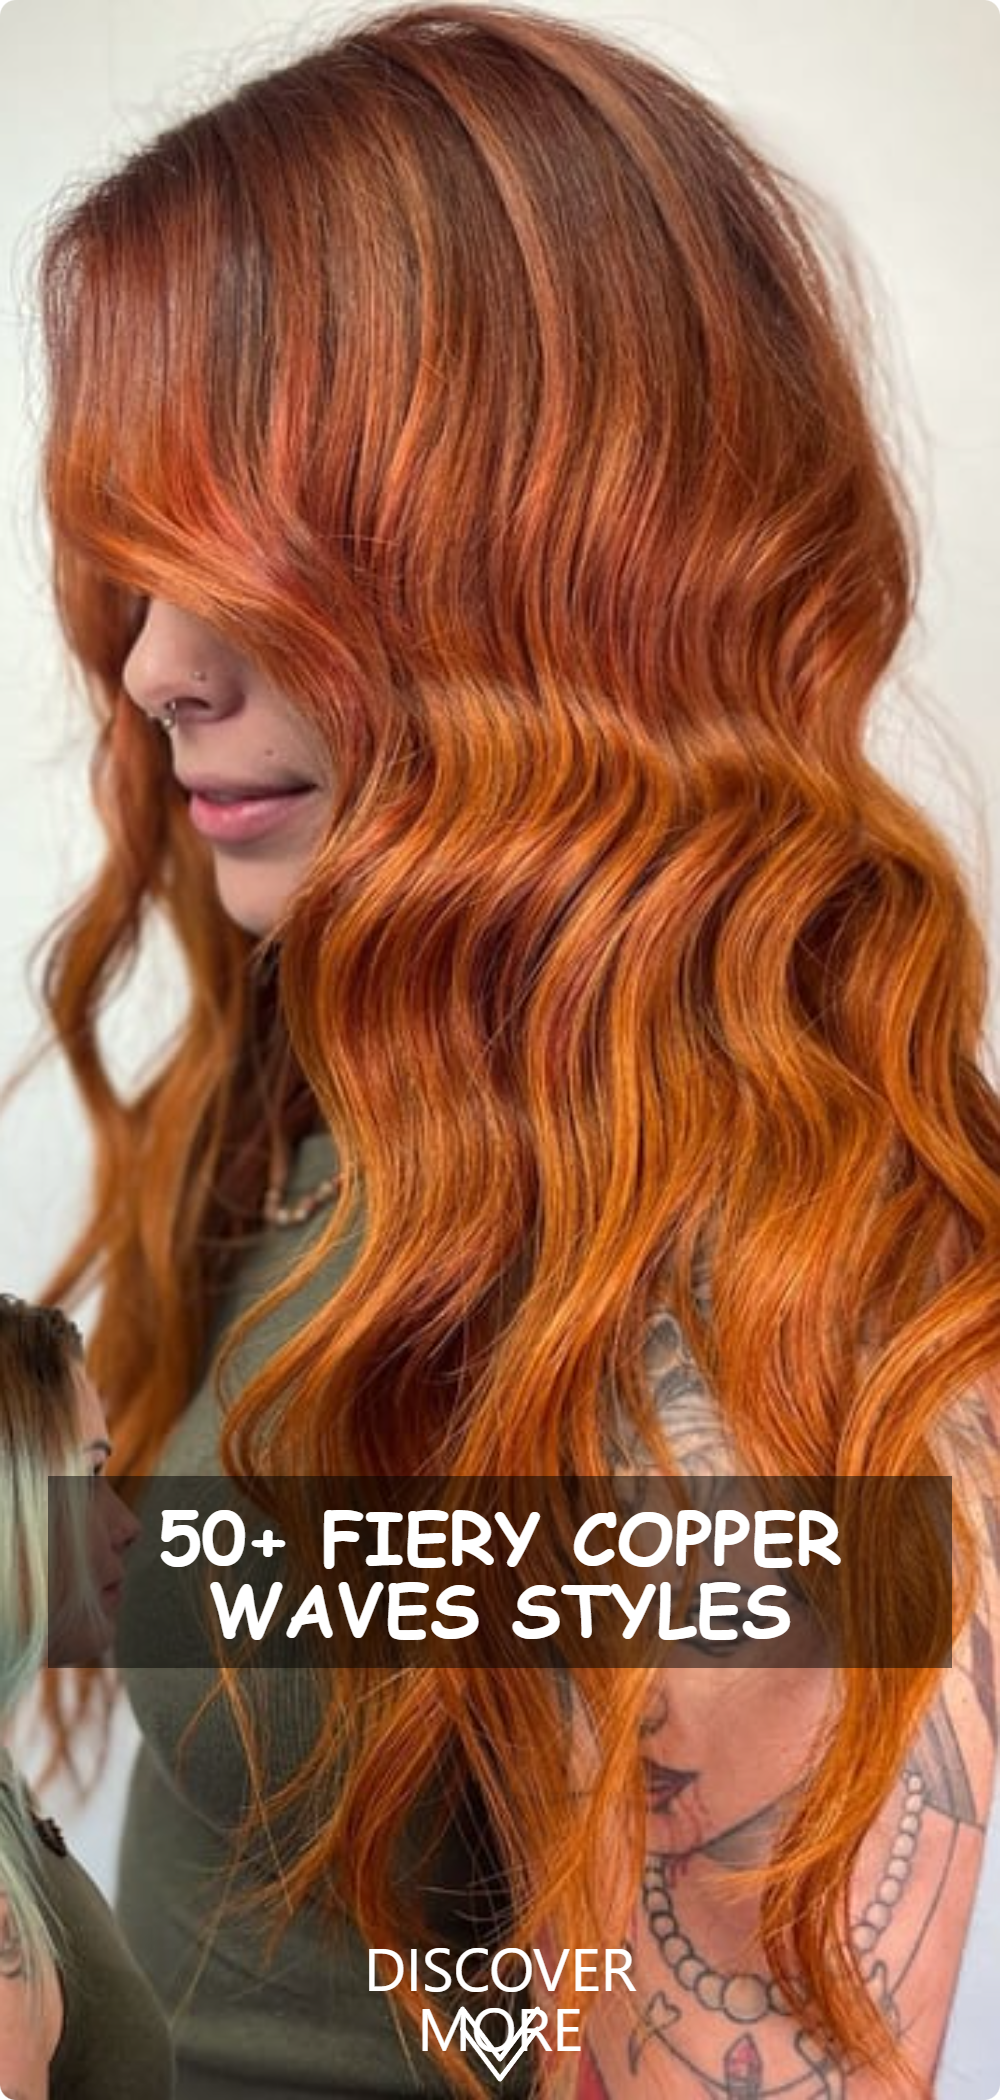 Fiery Copper Waves